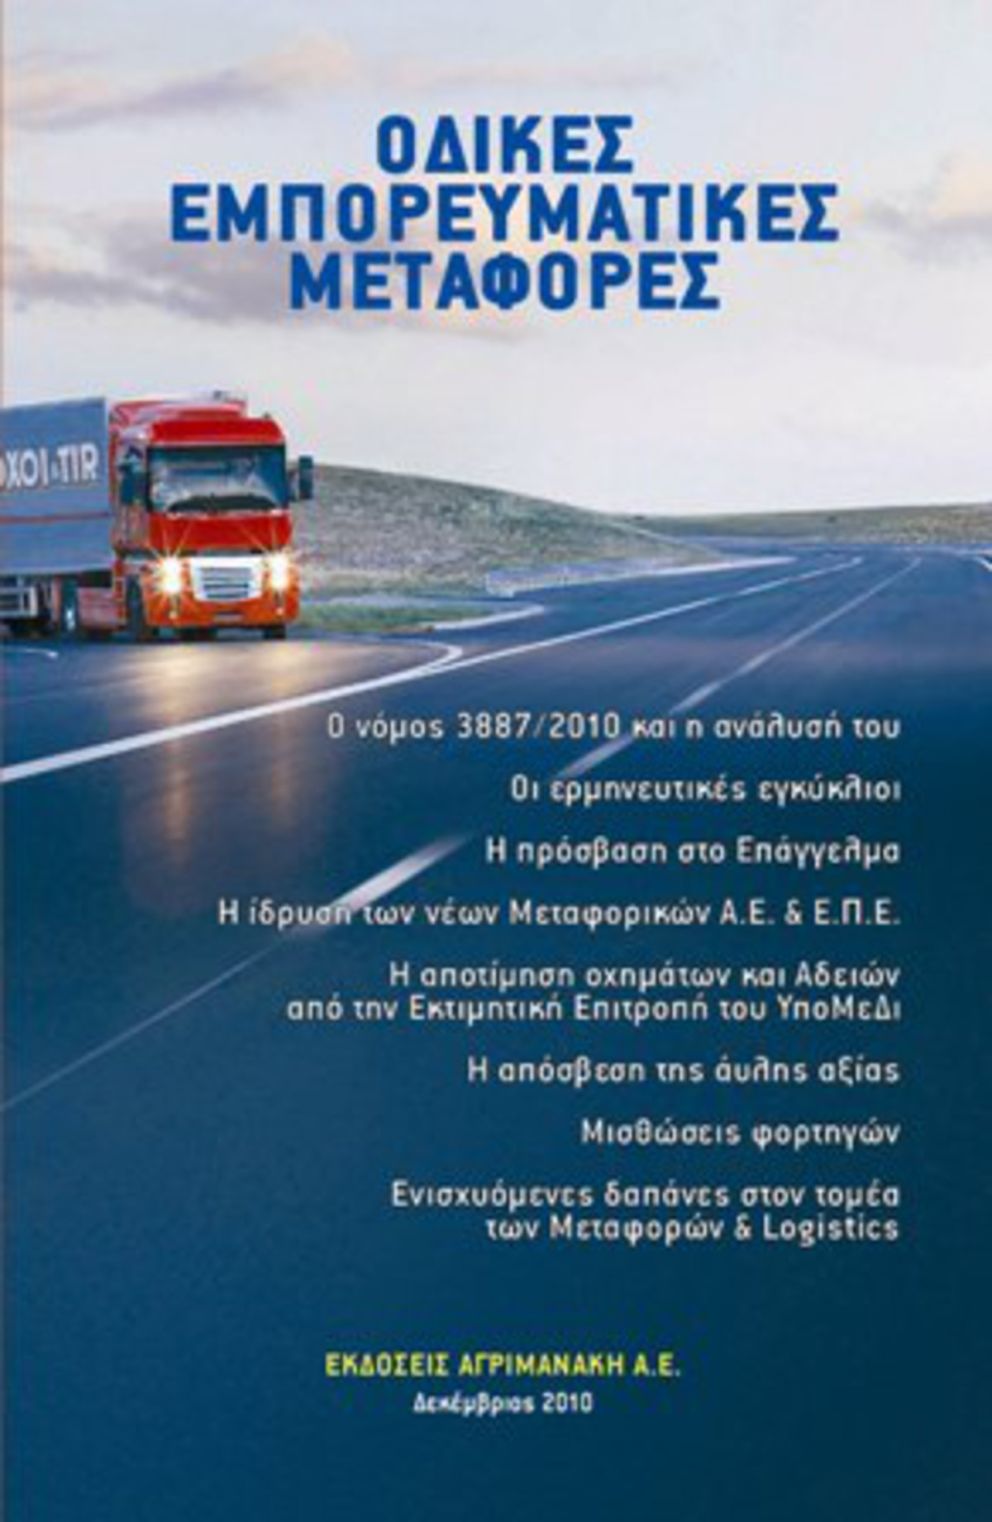 Βιβλίο για τις Οδικές Εμπορευματικές Μεταφορές